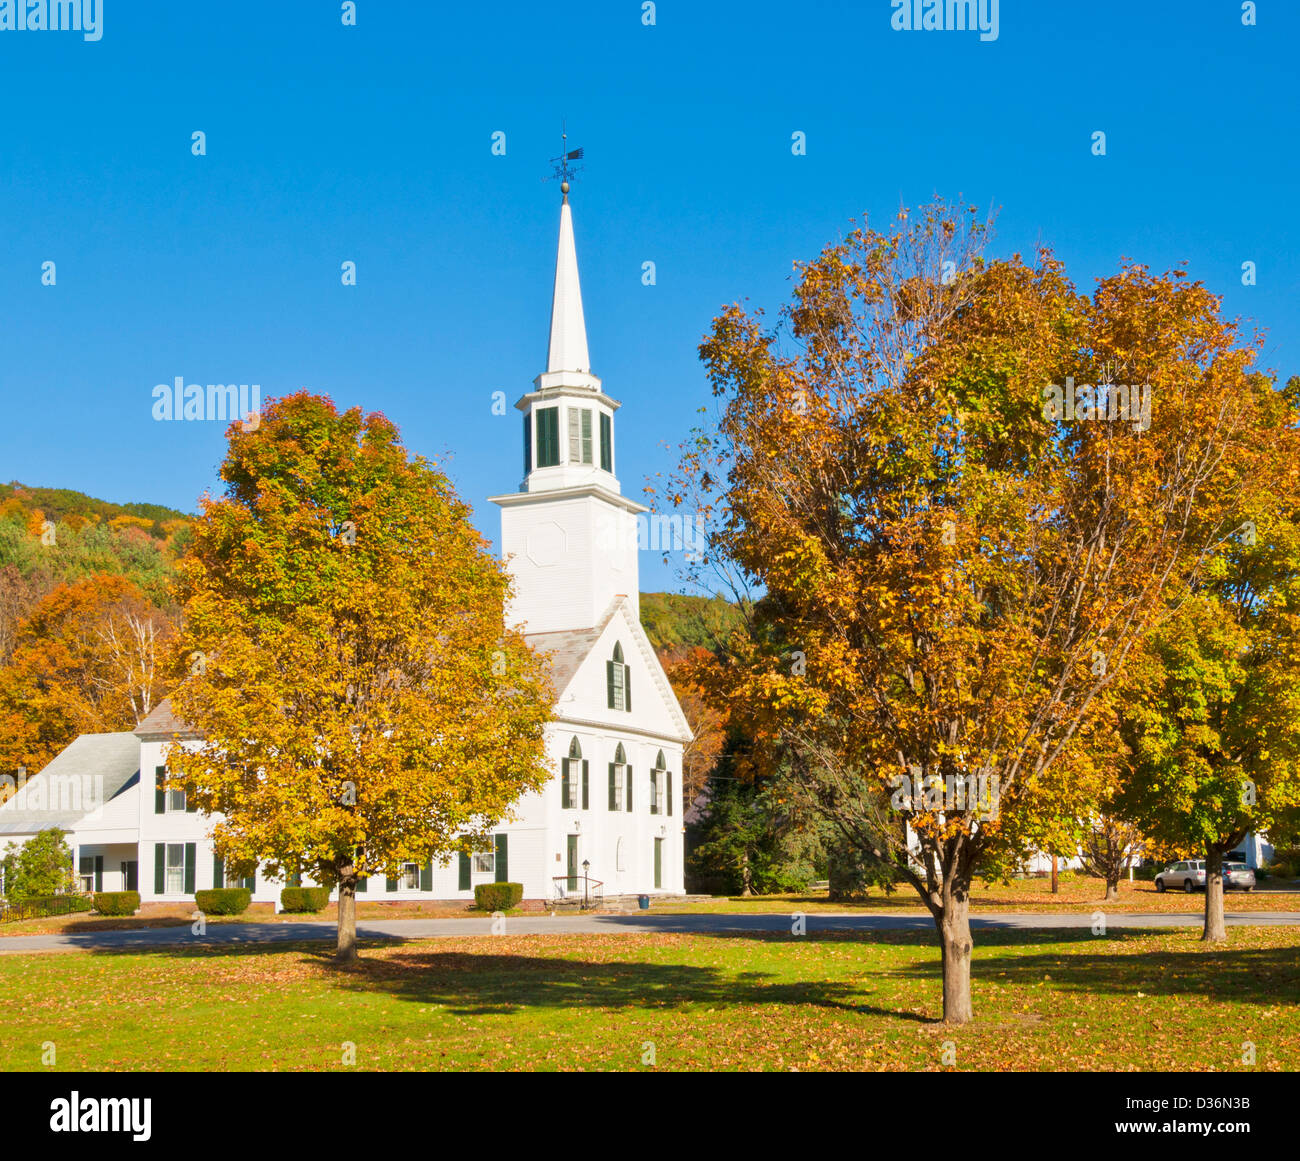 Townshend Vermont USA - Herbstfarben rund um die traditionelle weiße holzverkleidete Kirche Townshend Windham County Vermont USA Stockfoto